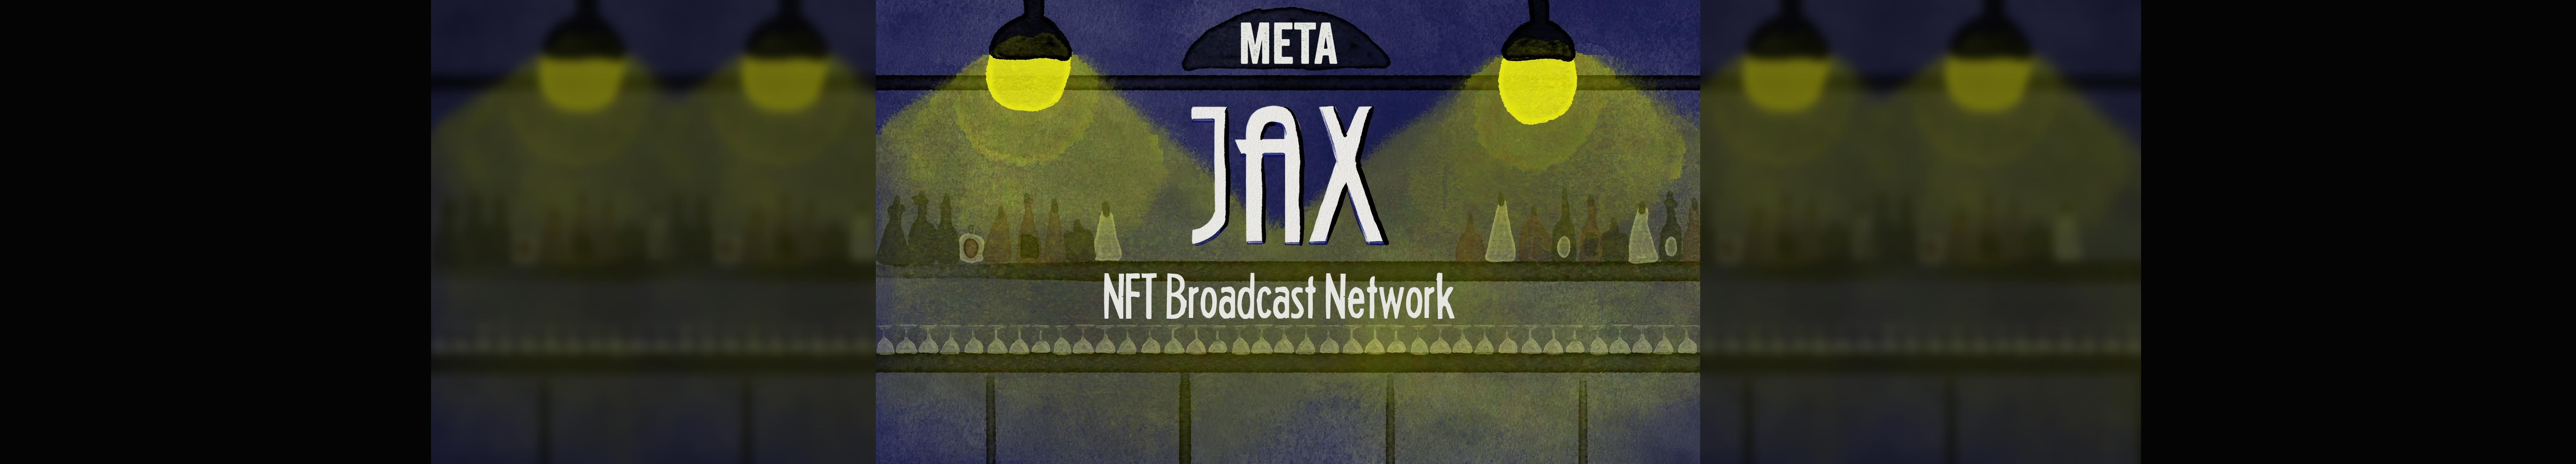 MetaJAX banner